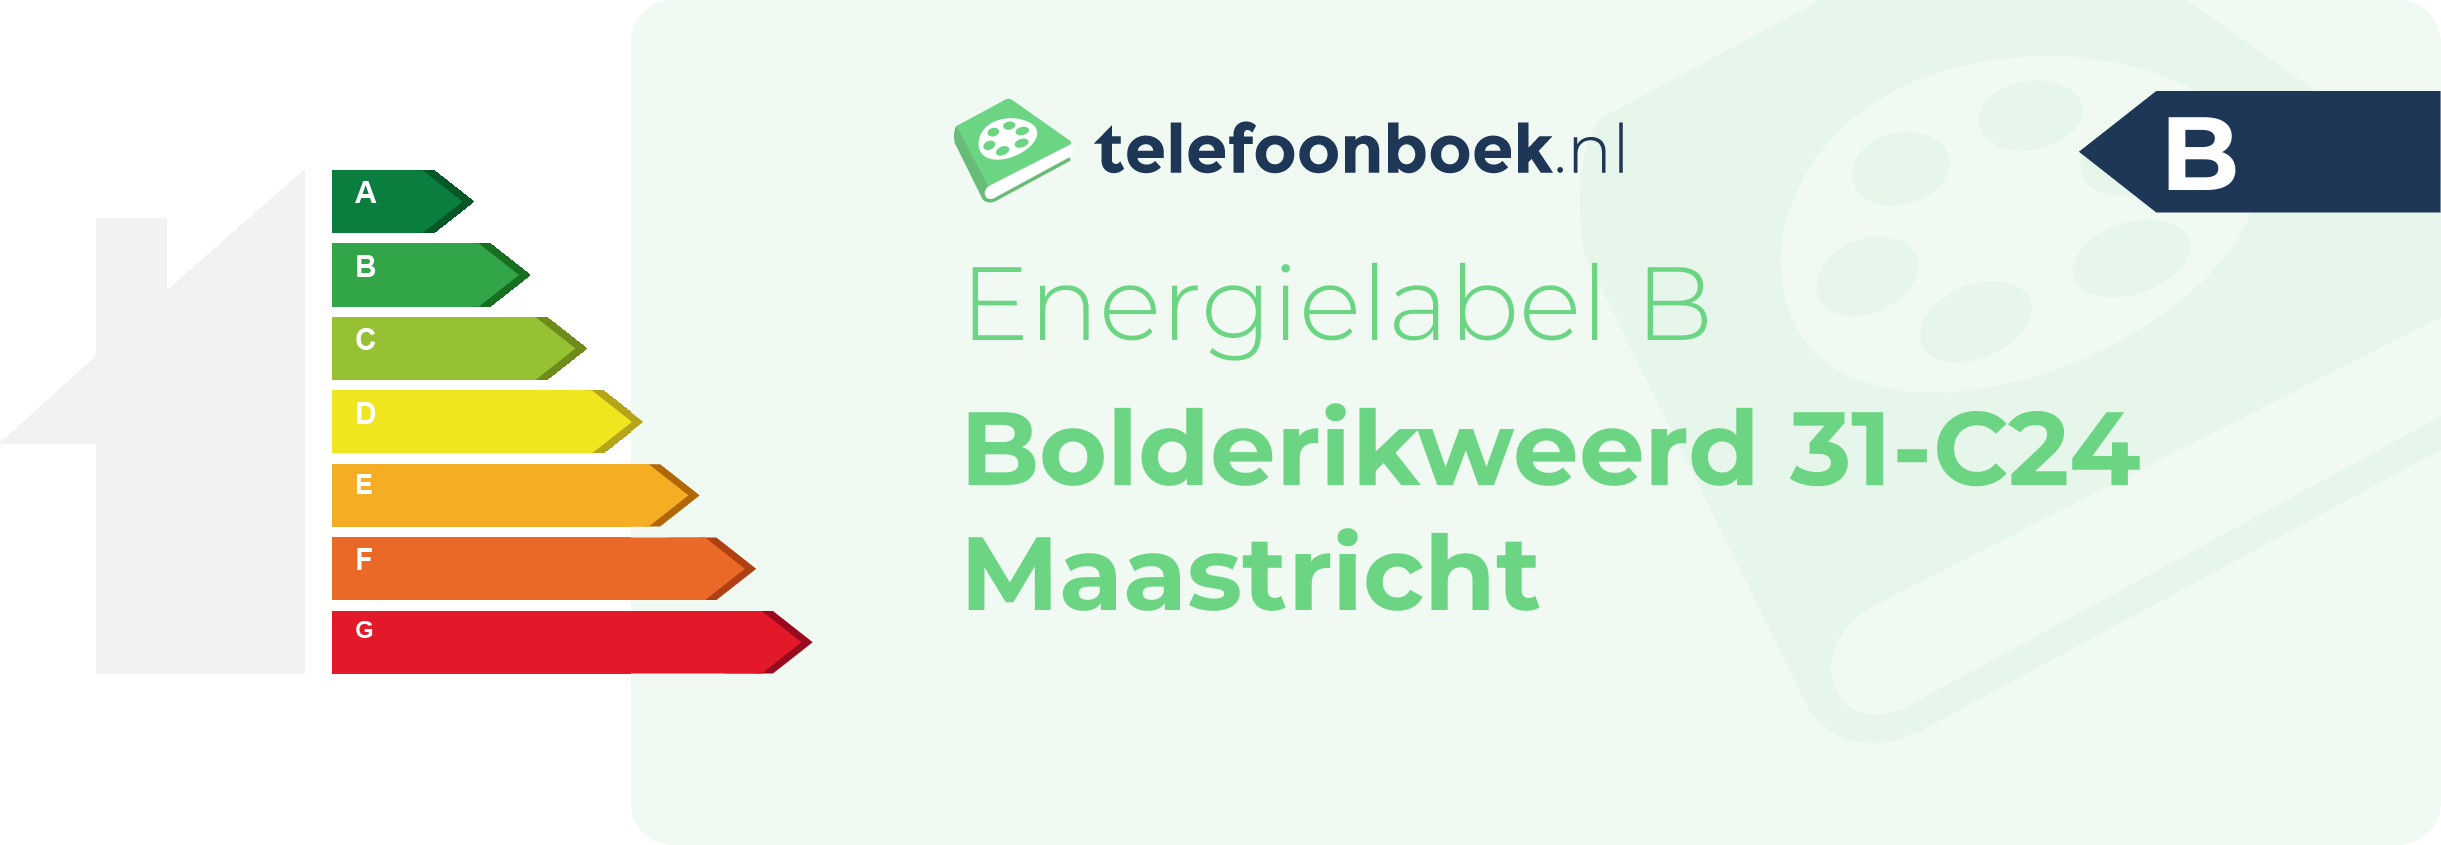 Energielabel Bolderikweerd 31-C24 Maastricht